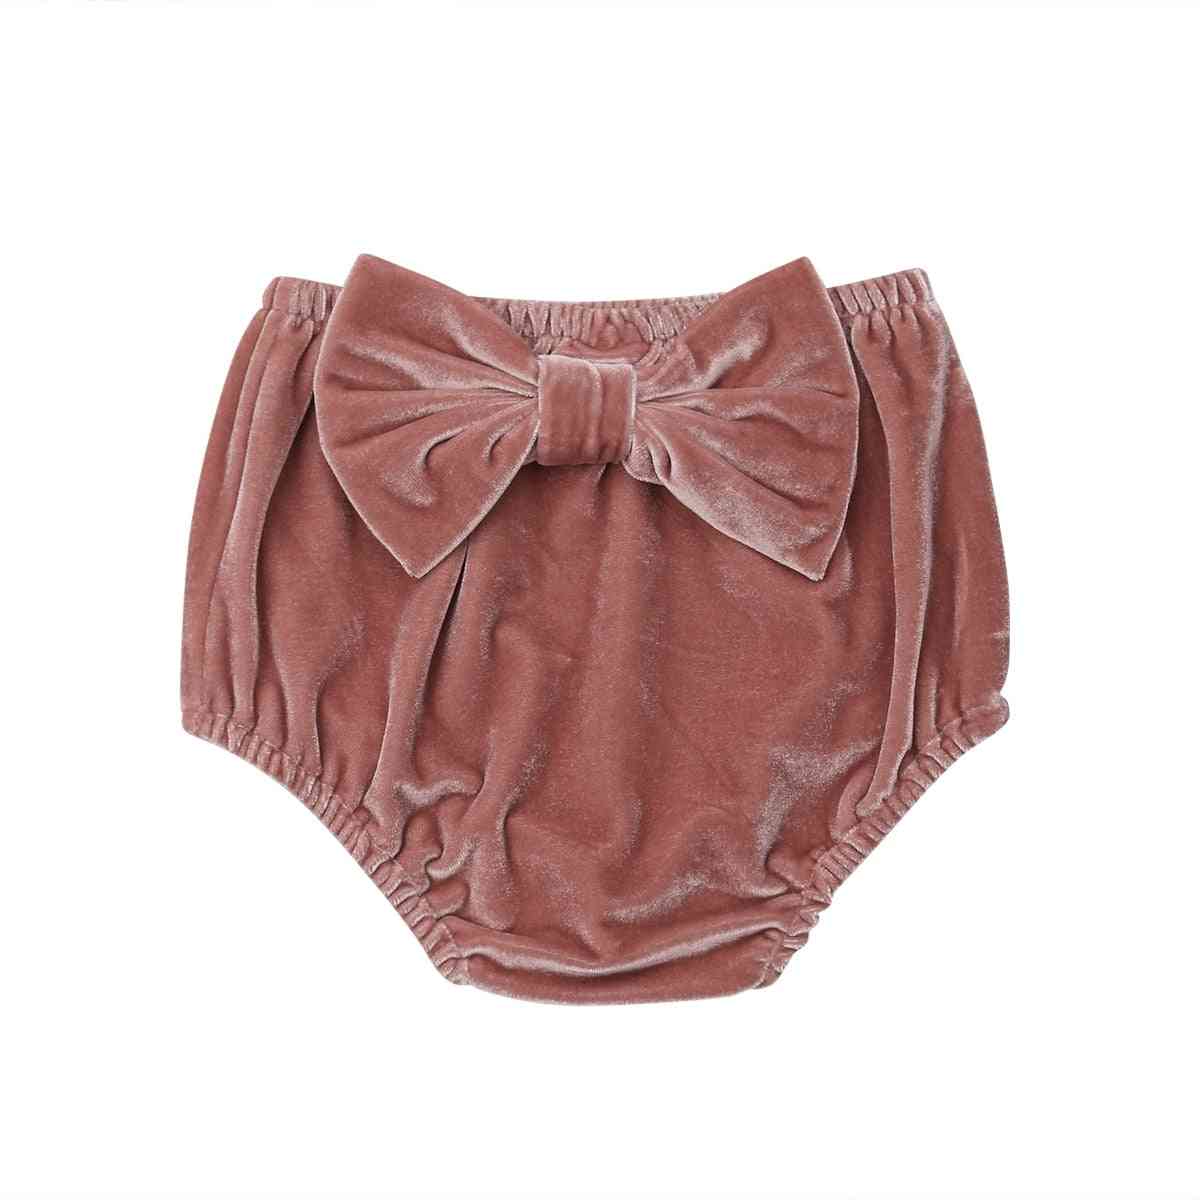 Velvet Shorts, Princess Bow Bottoms, Shorts Diaper Cover For Baby Girl